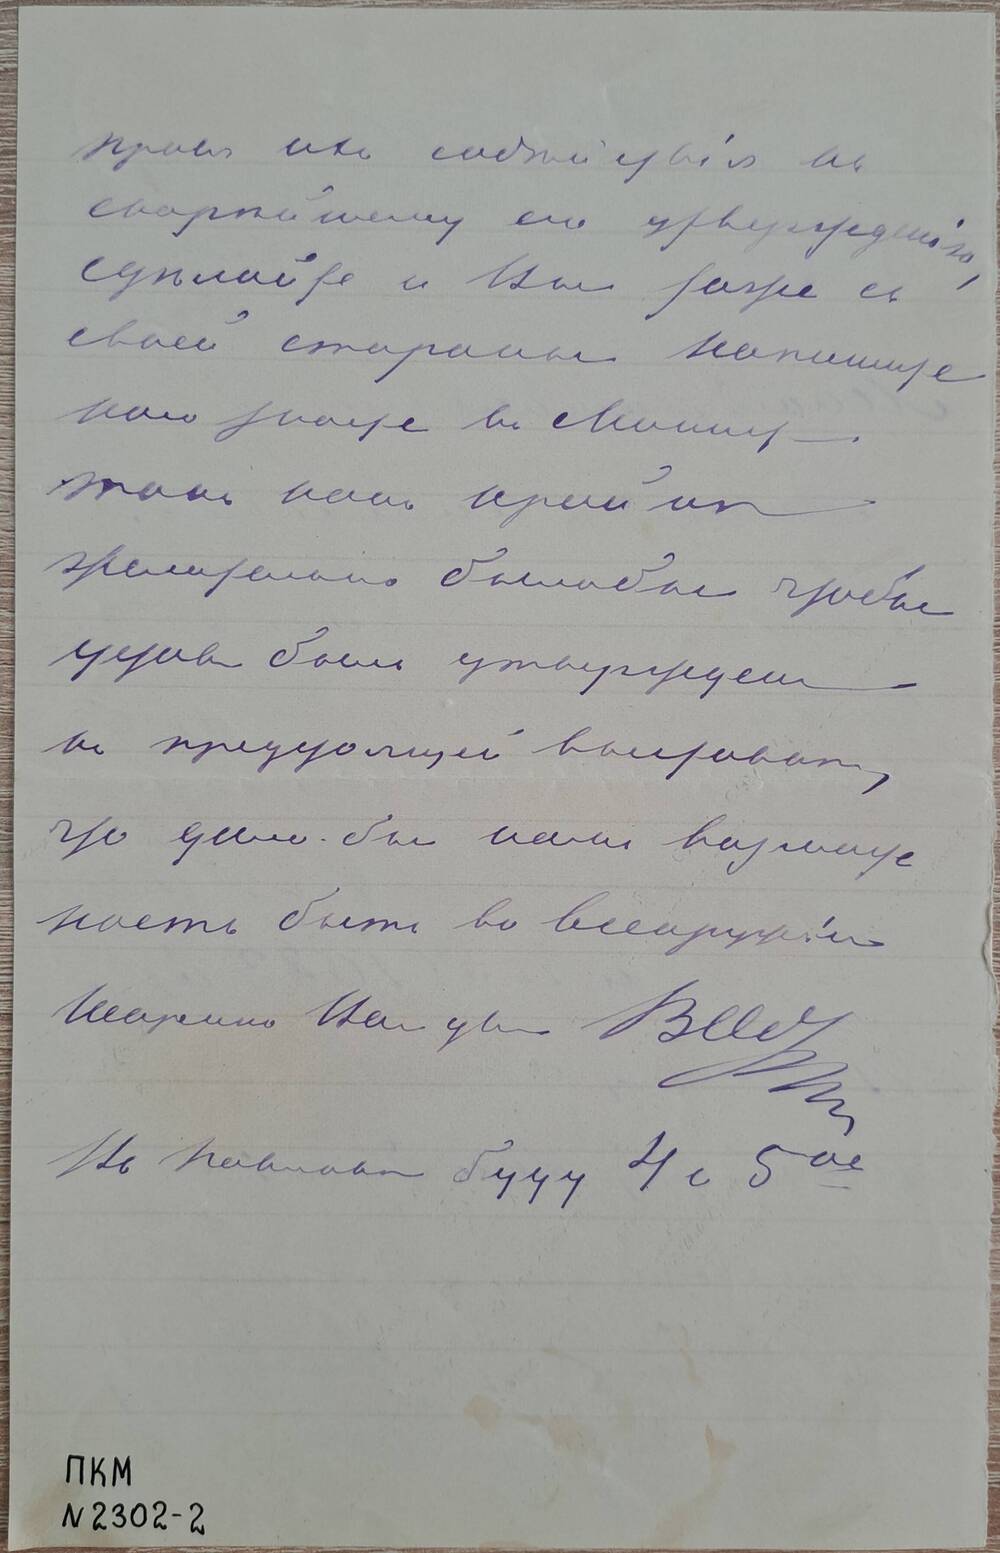 Письмо А.Г. Штанге от В.Д. Обтяжнова, в котором сообщается об одобрении губернатором устава кустарного попечительства и отправлении устава министру земледелия.